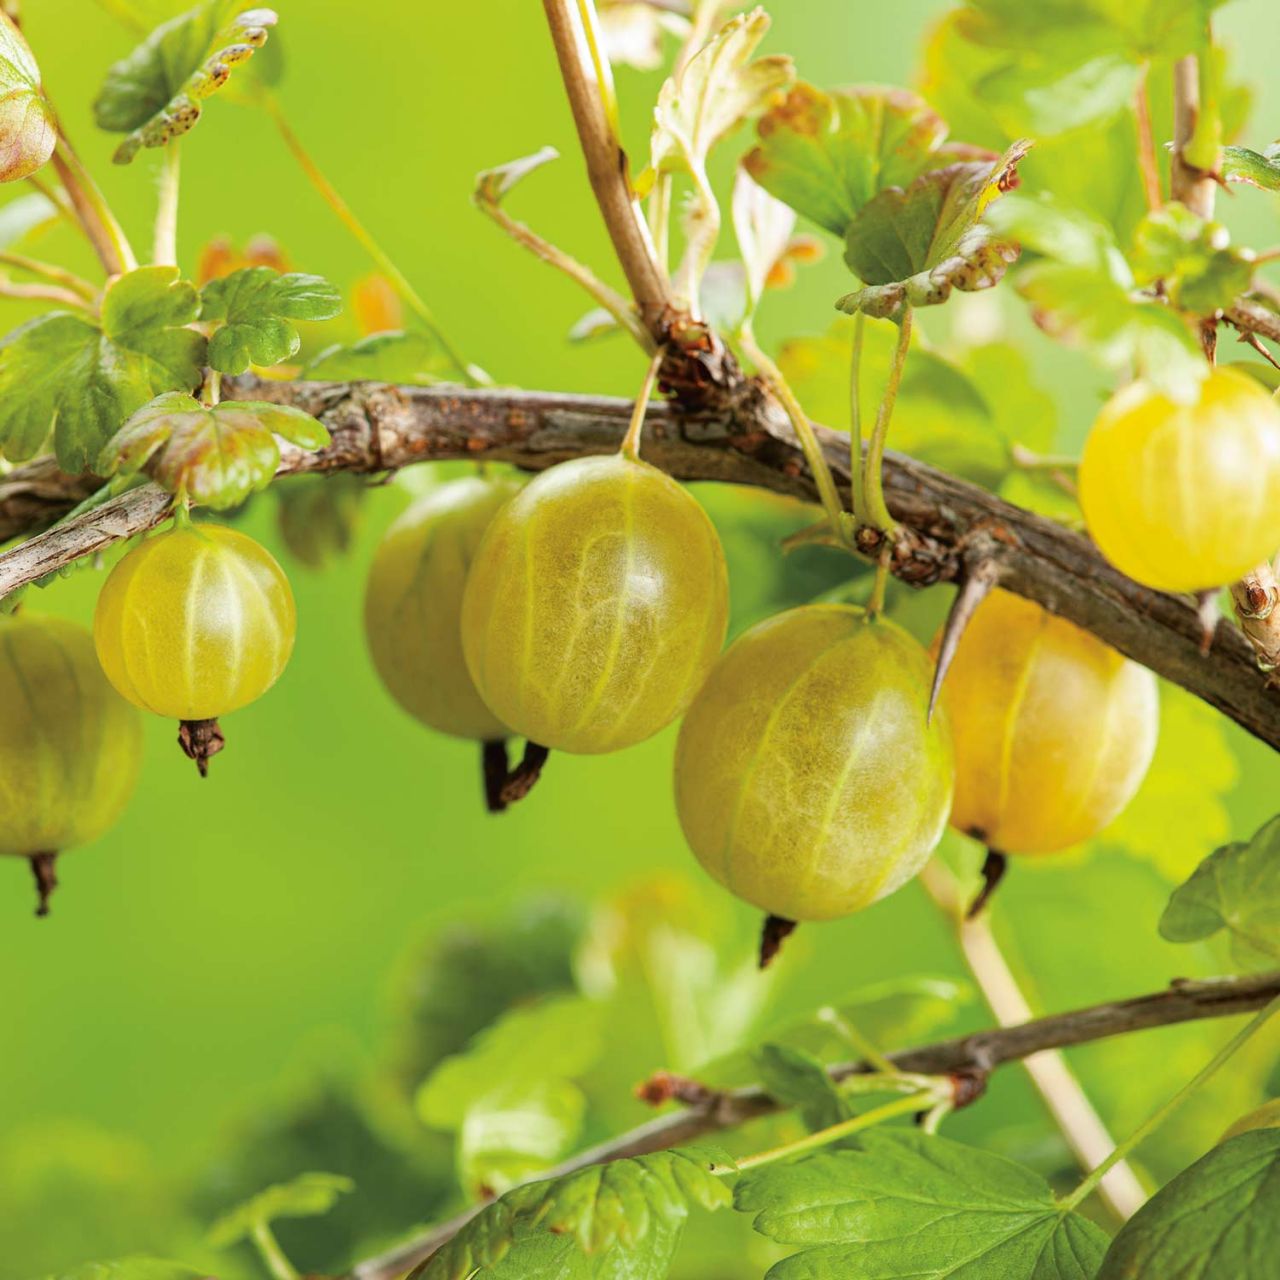 Kategorie <b>Beeren </b> - Stachelbeere 'Crispa® Goldling®' - Ribes uva-crispa 'Crispa®' 'Goldling®' 